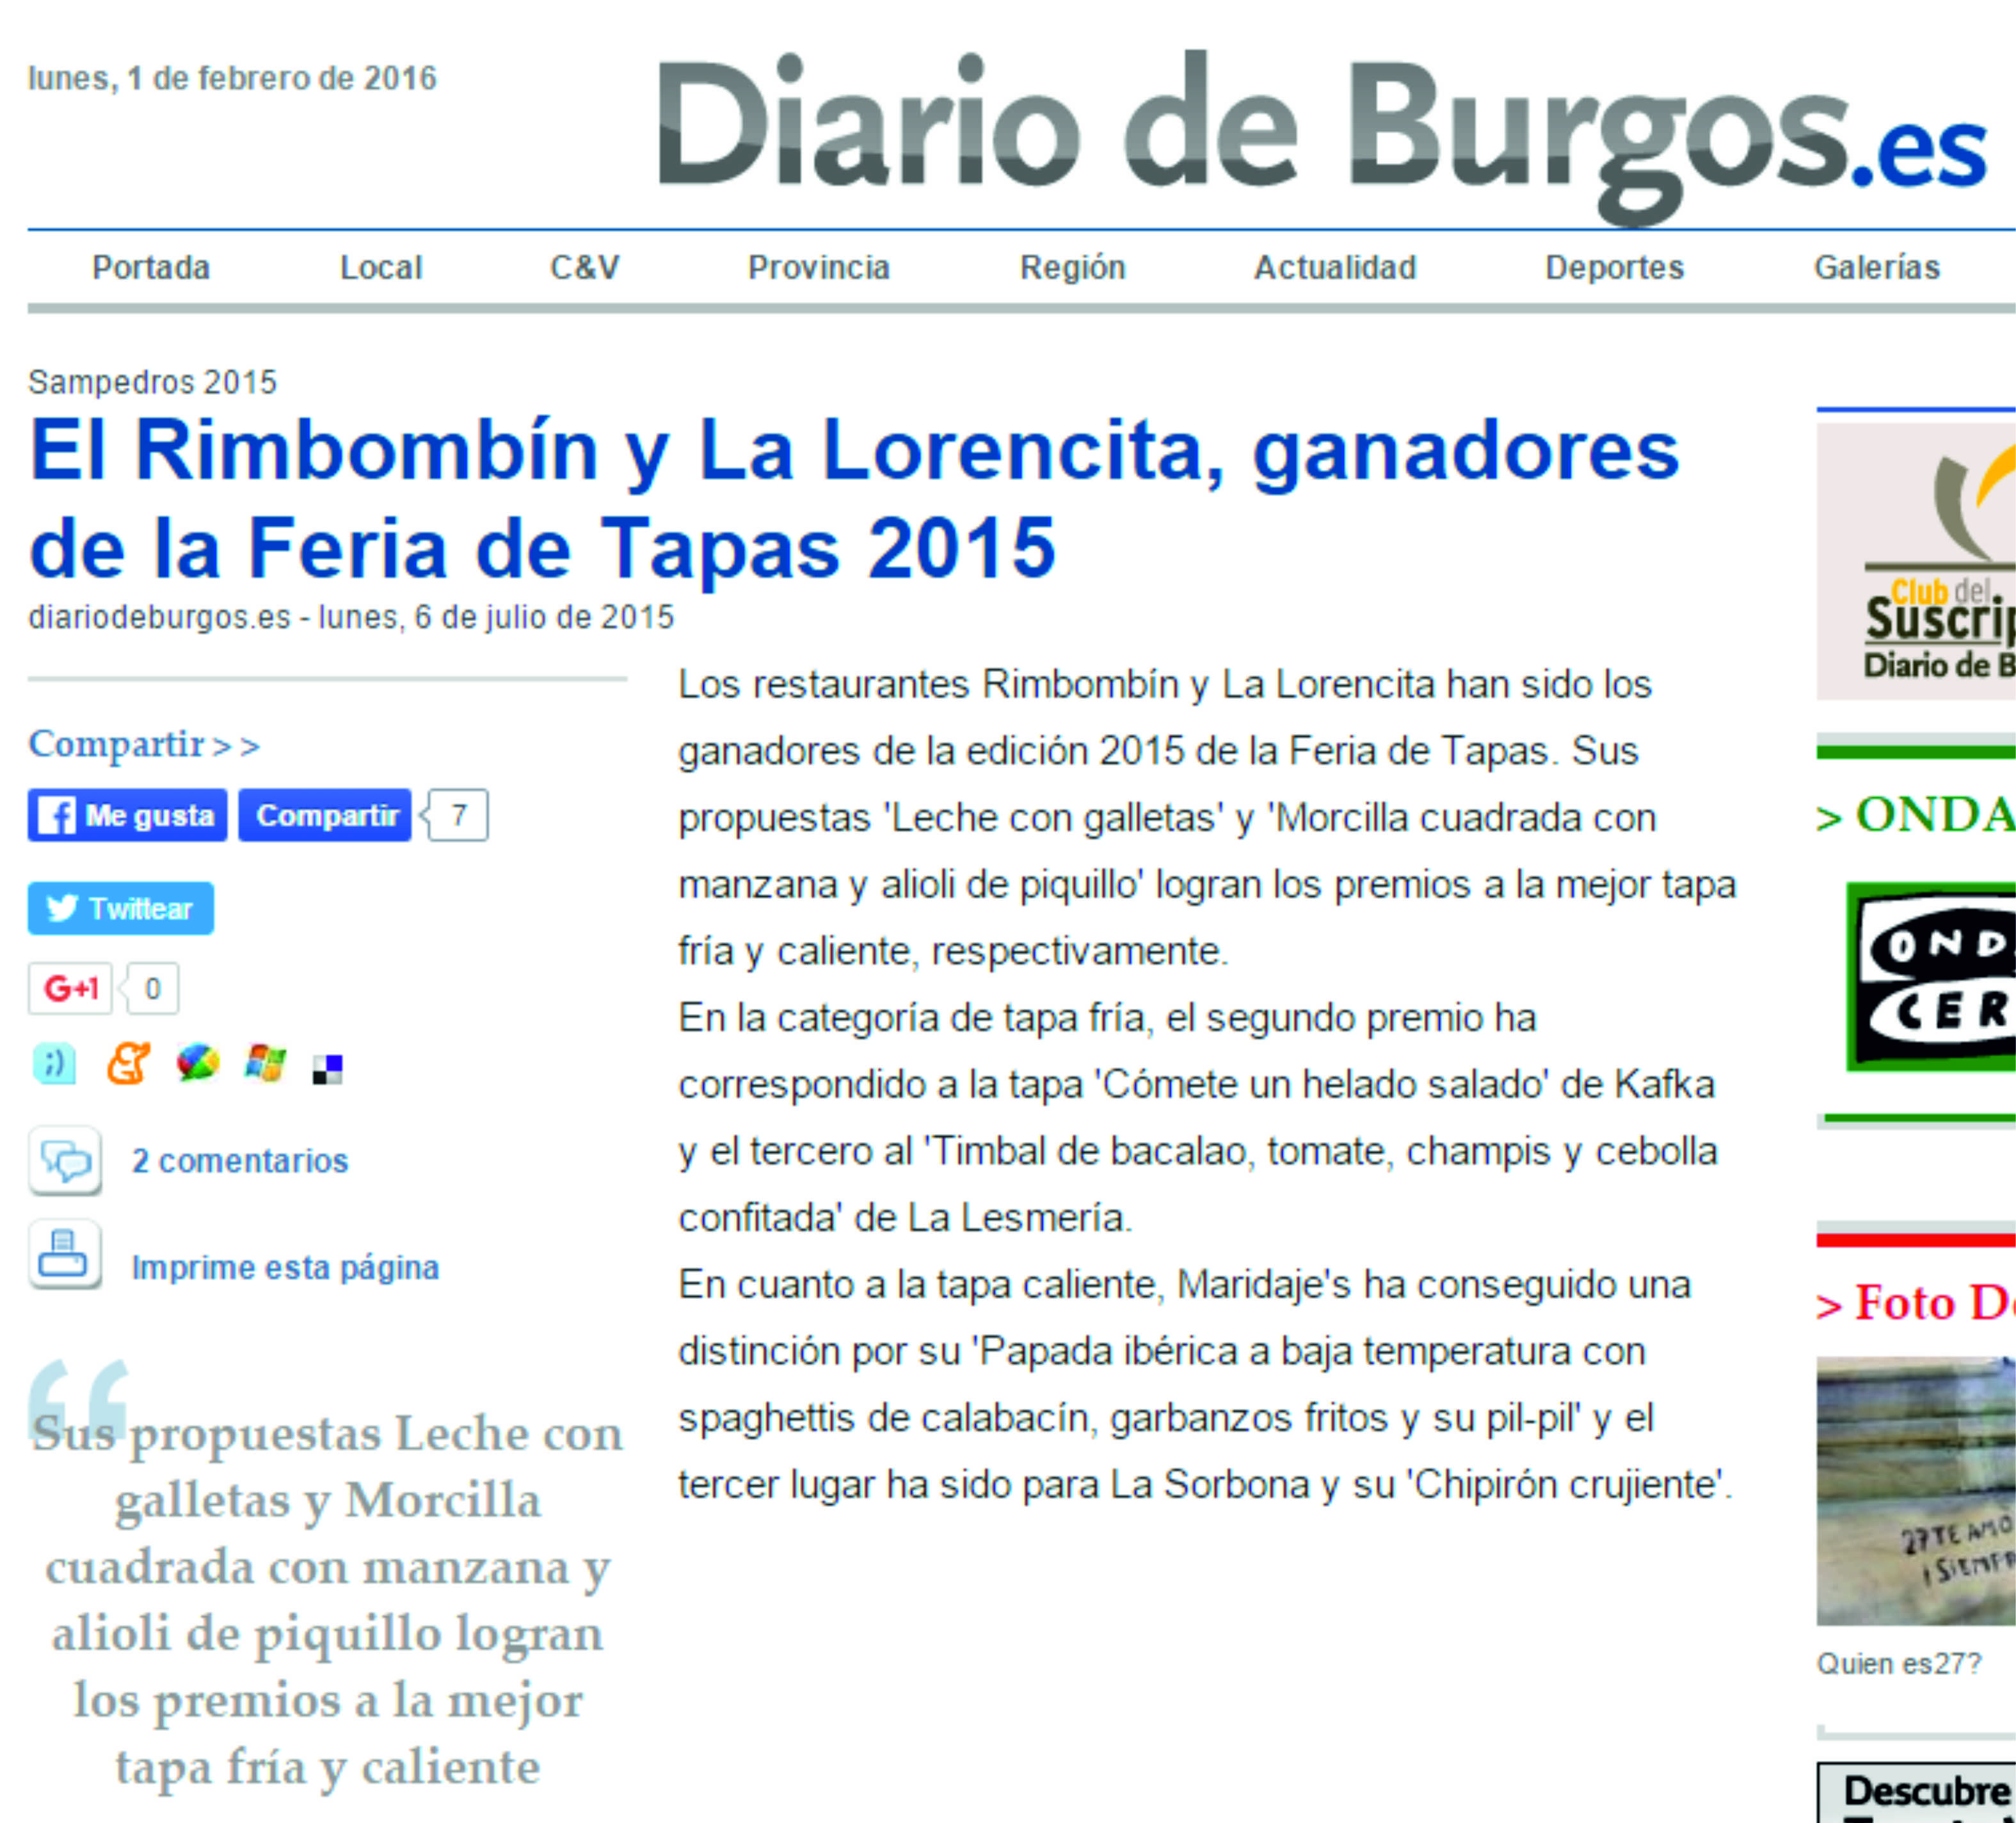 Diario de Burgos, Rimbombín ganador Feria Tapas 2015